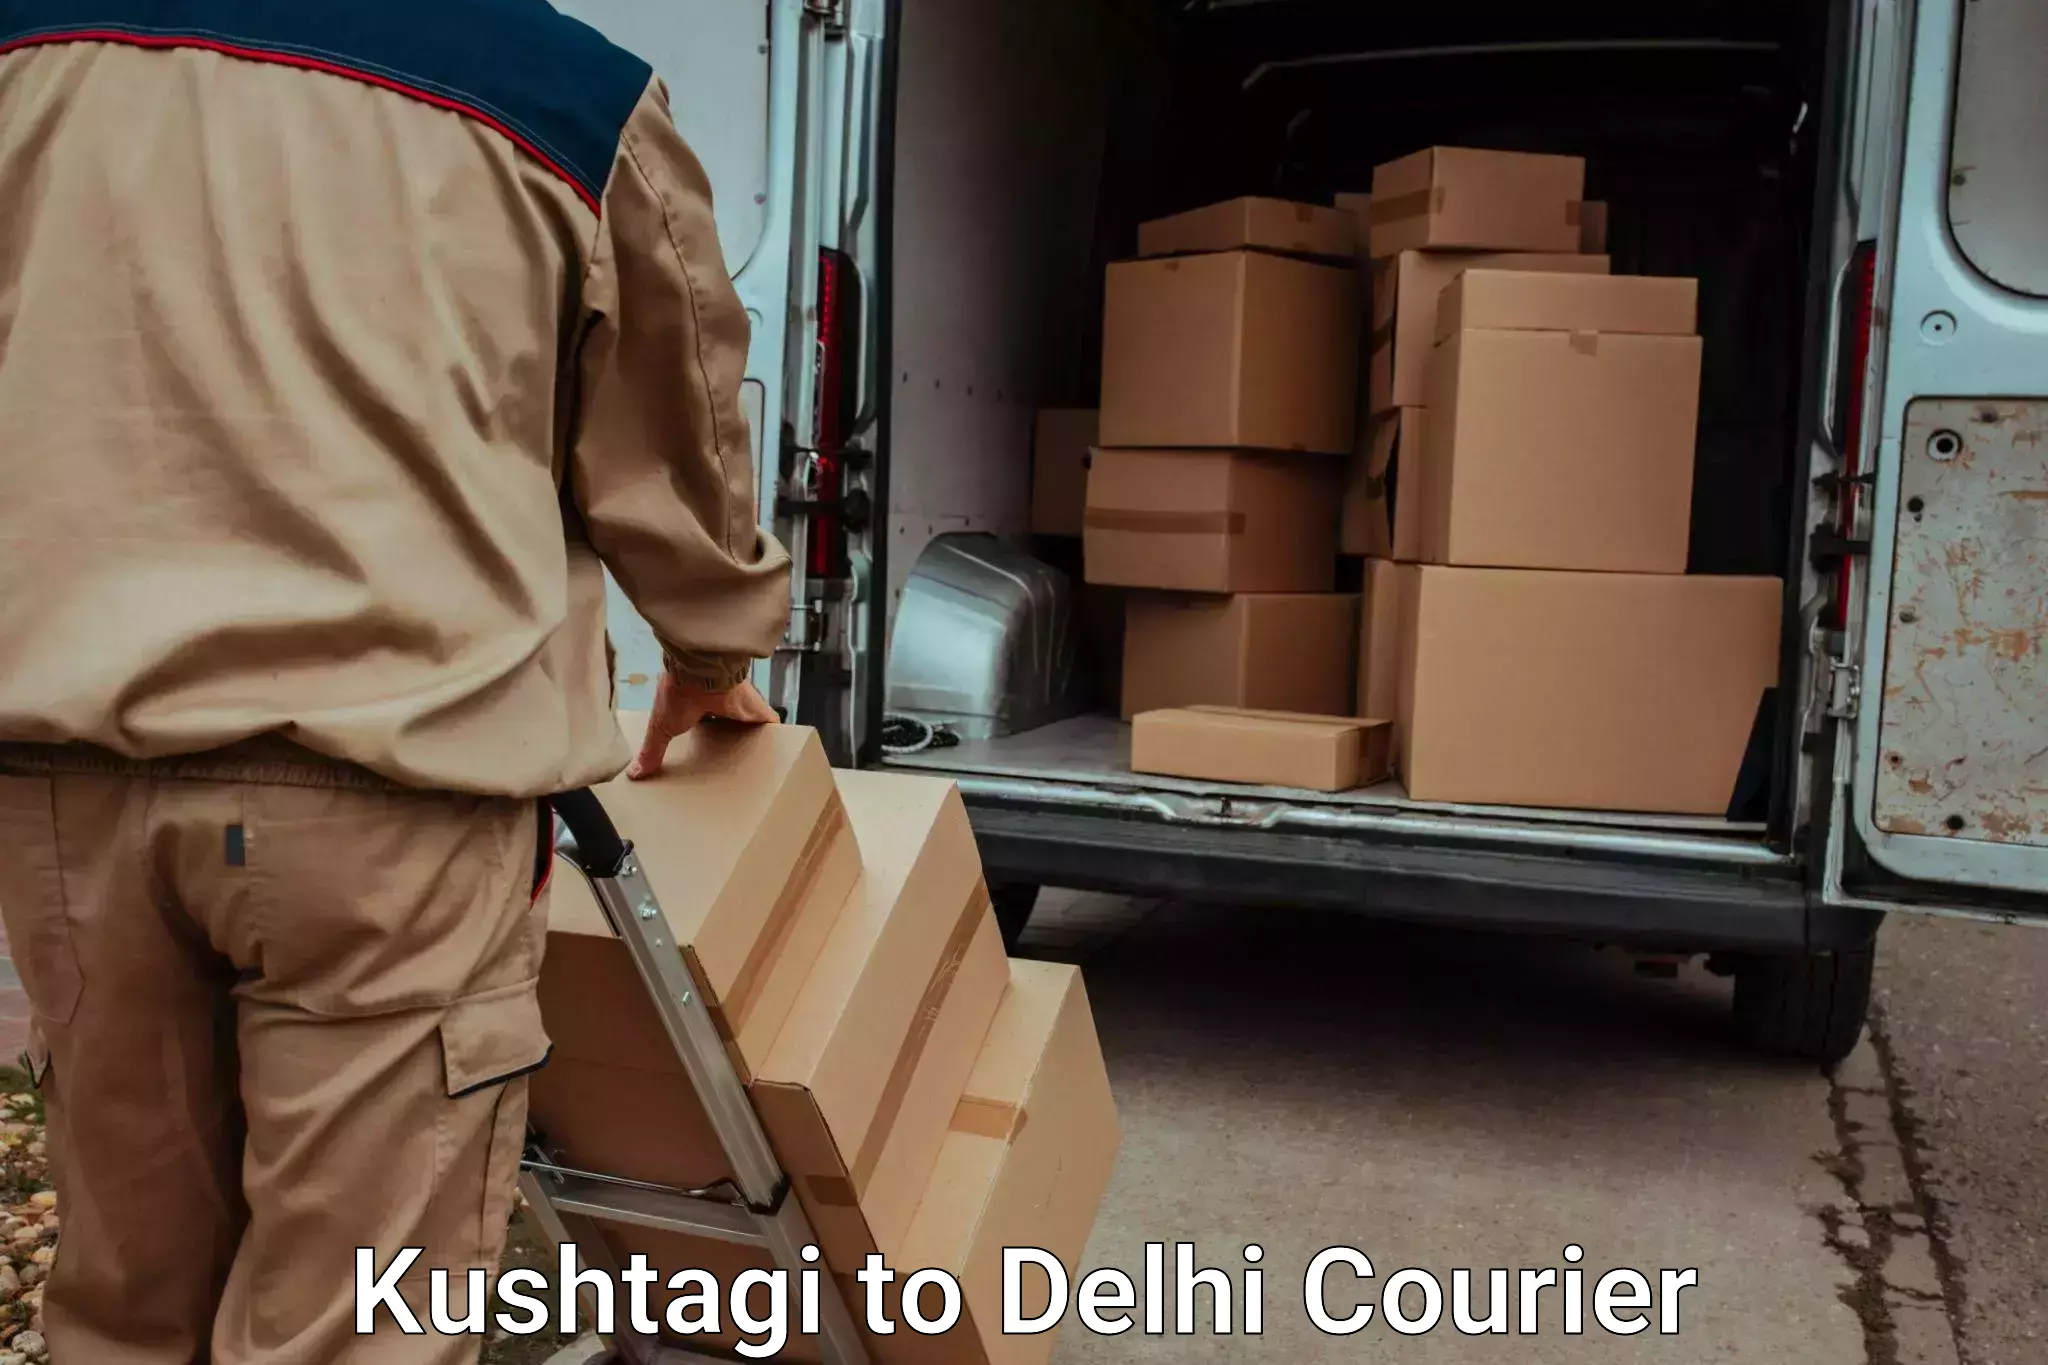 Baggage transport professionals Kushtagi to Delhi